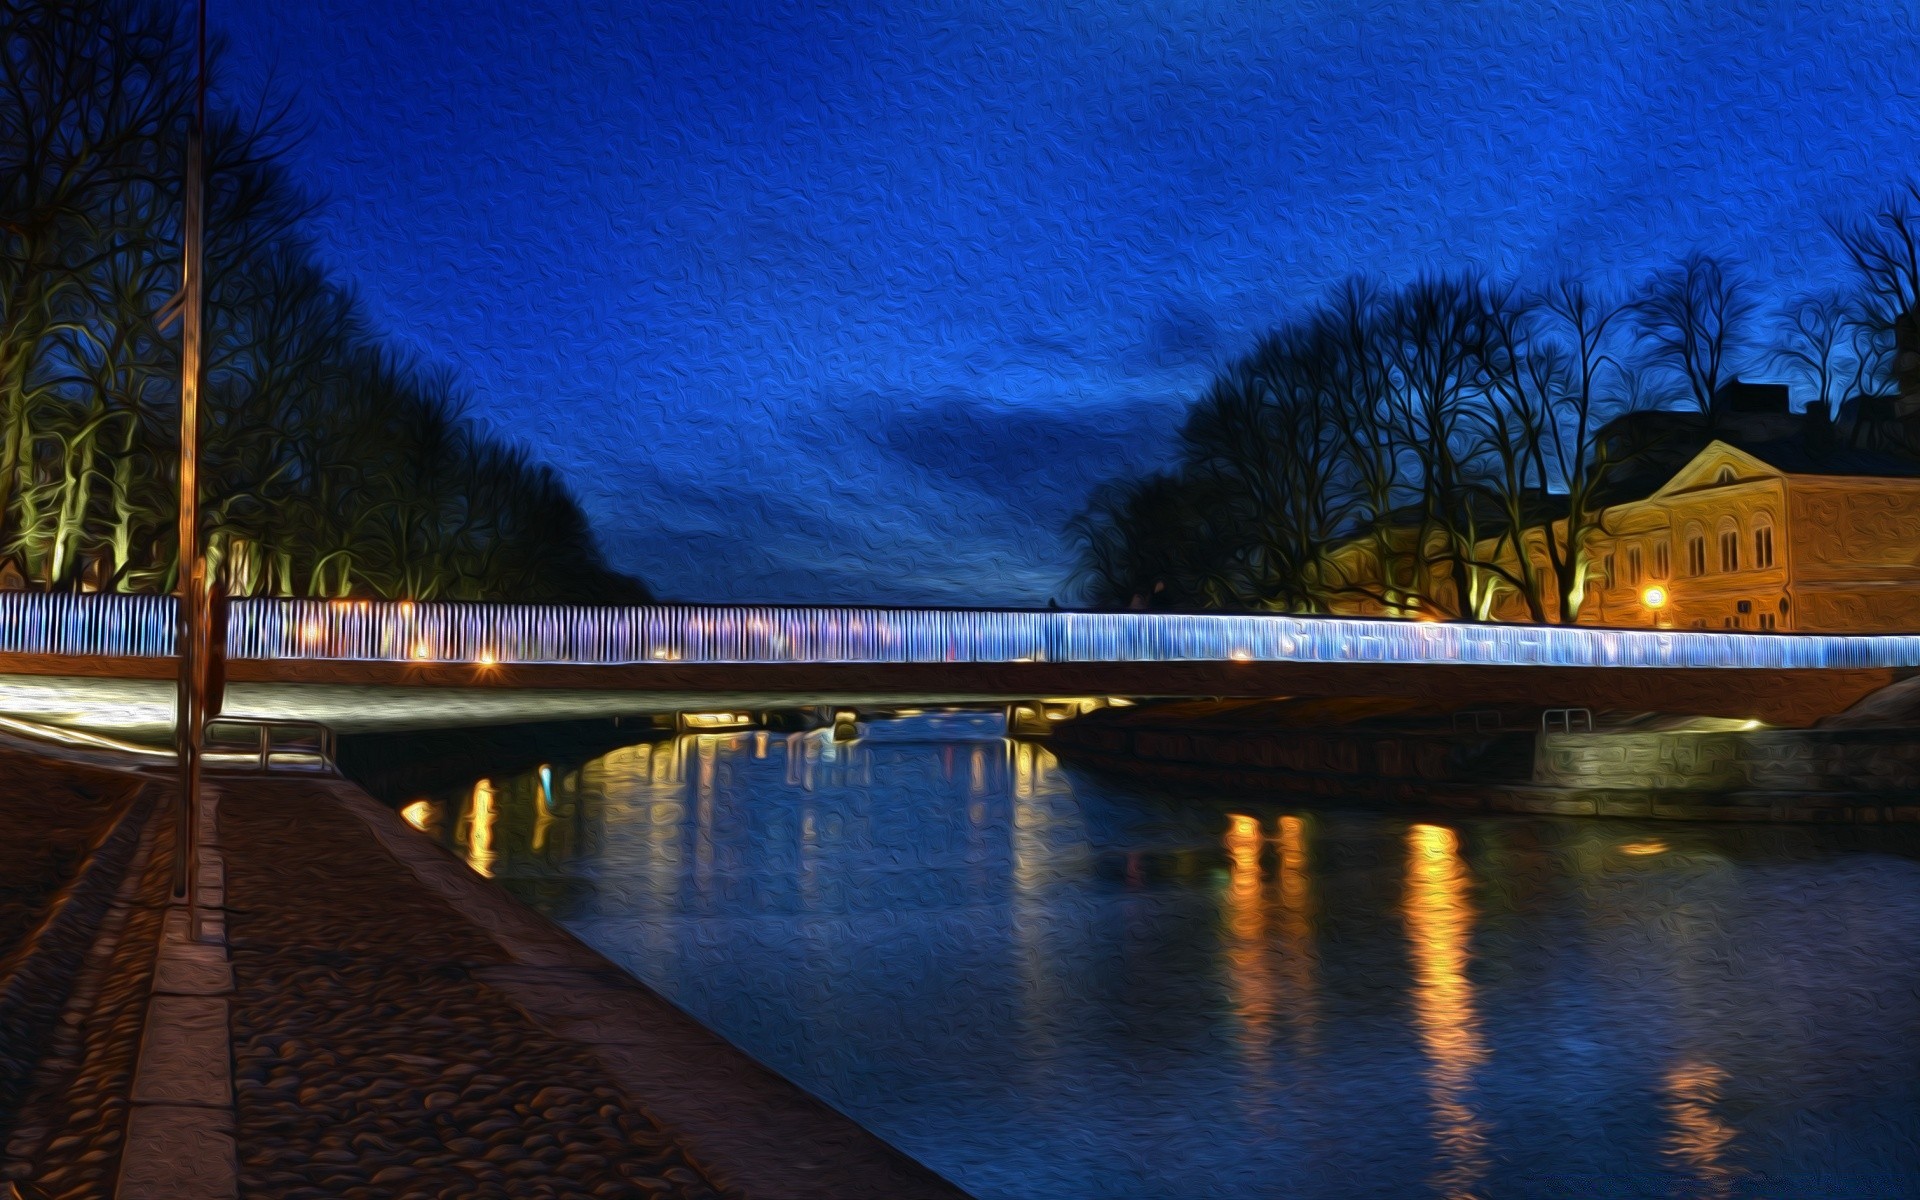 креатив воды закат рассвет мост вечером сумрак река отражение архитектура озеро путешествия на открытом воздухе свет дерево